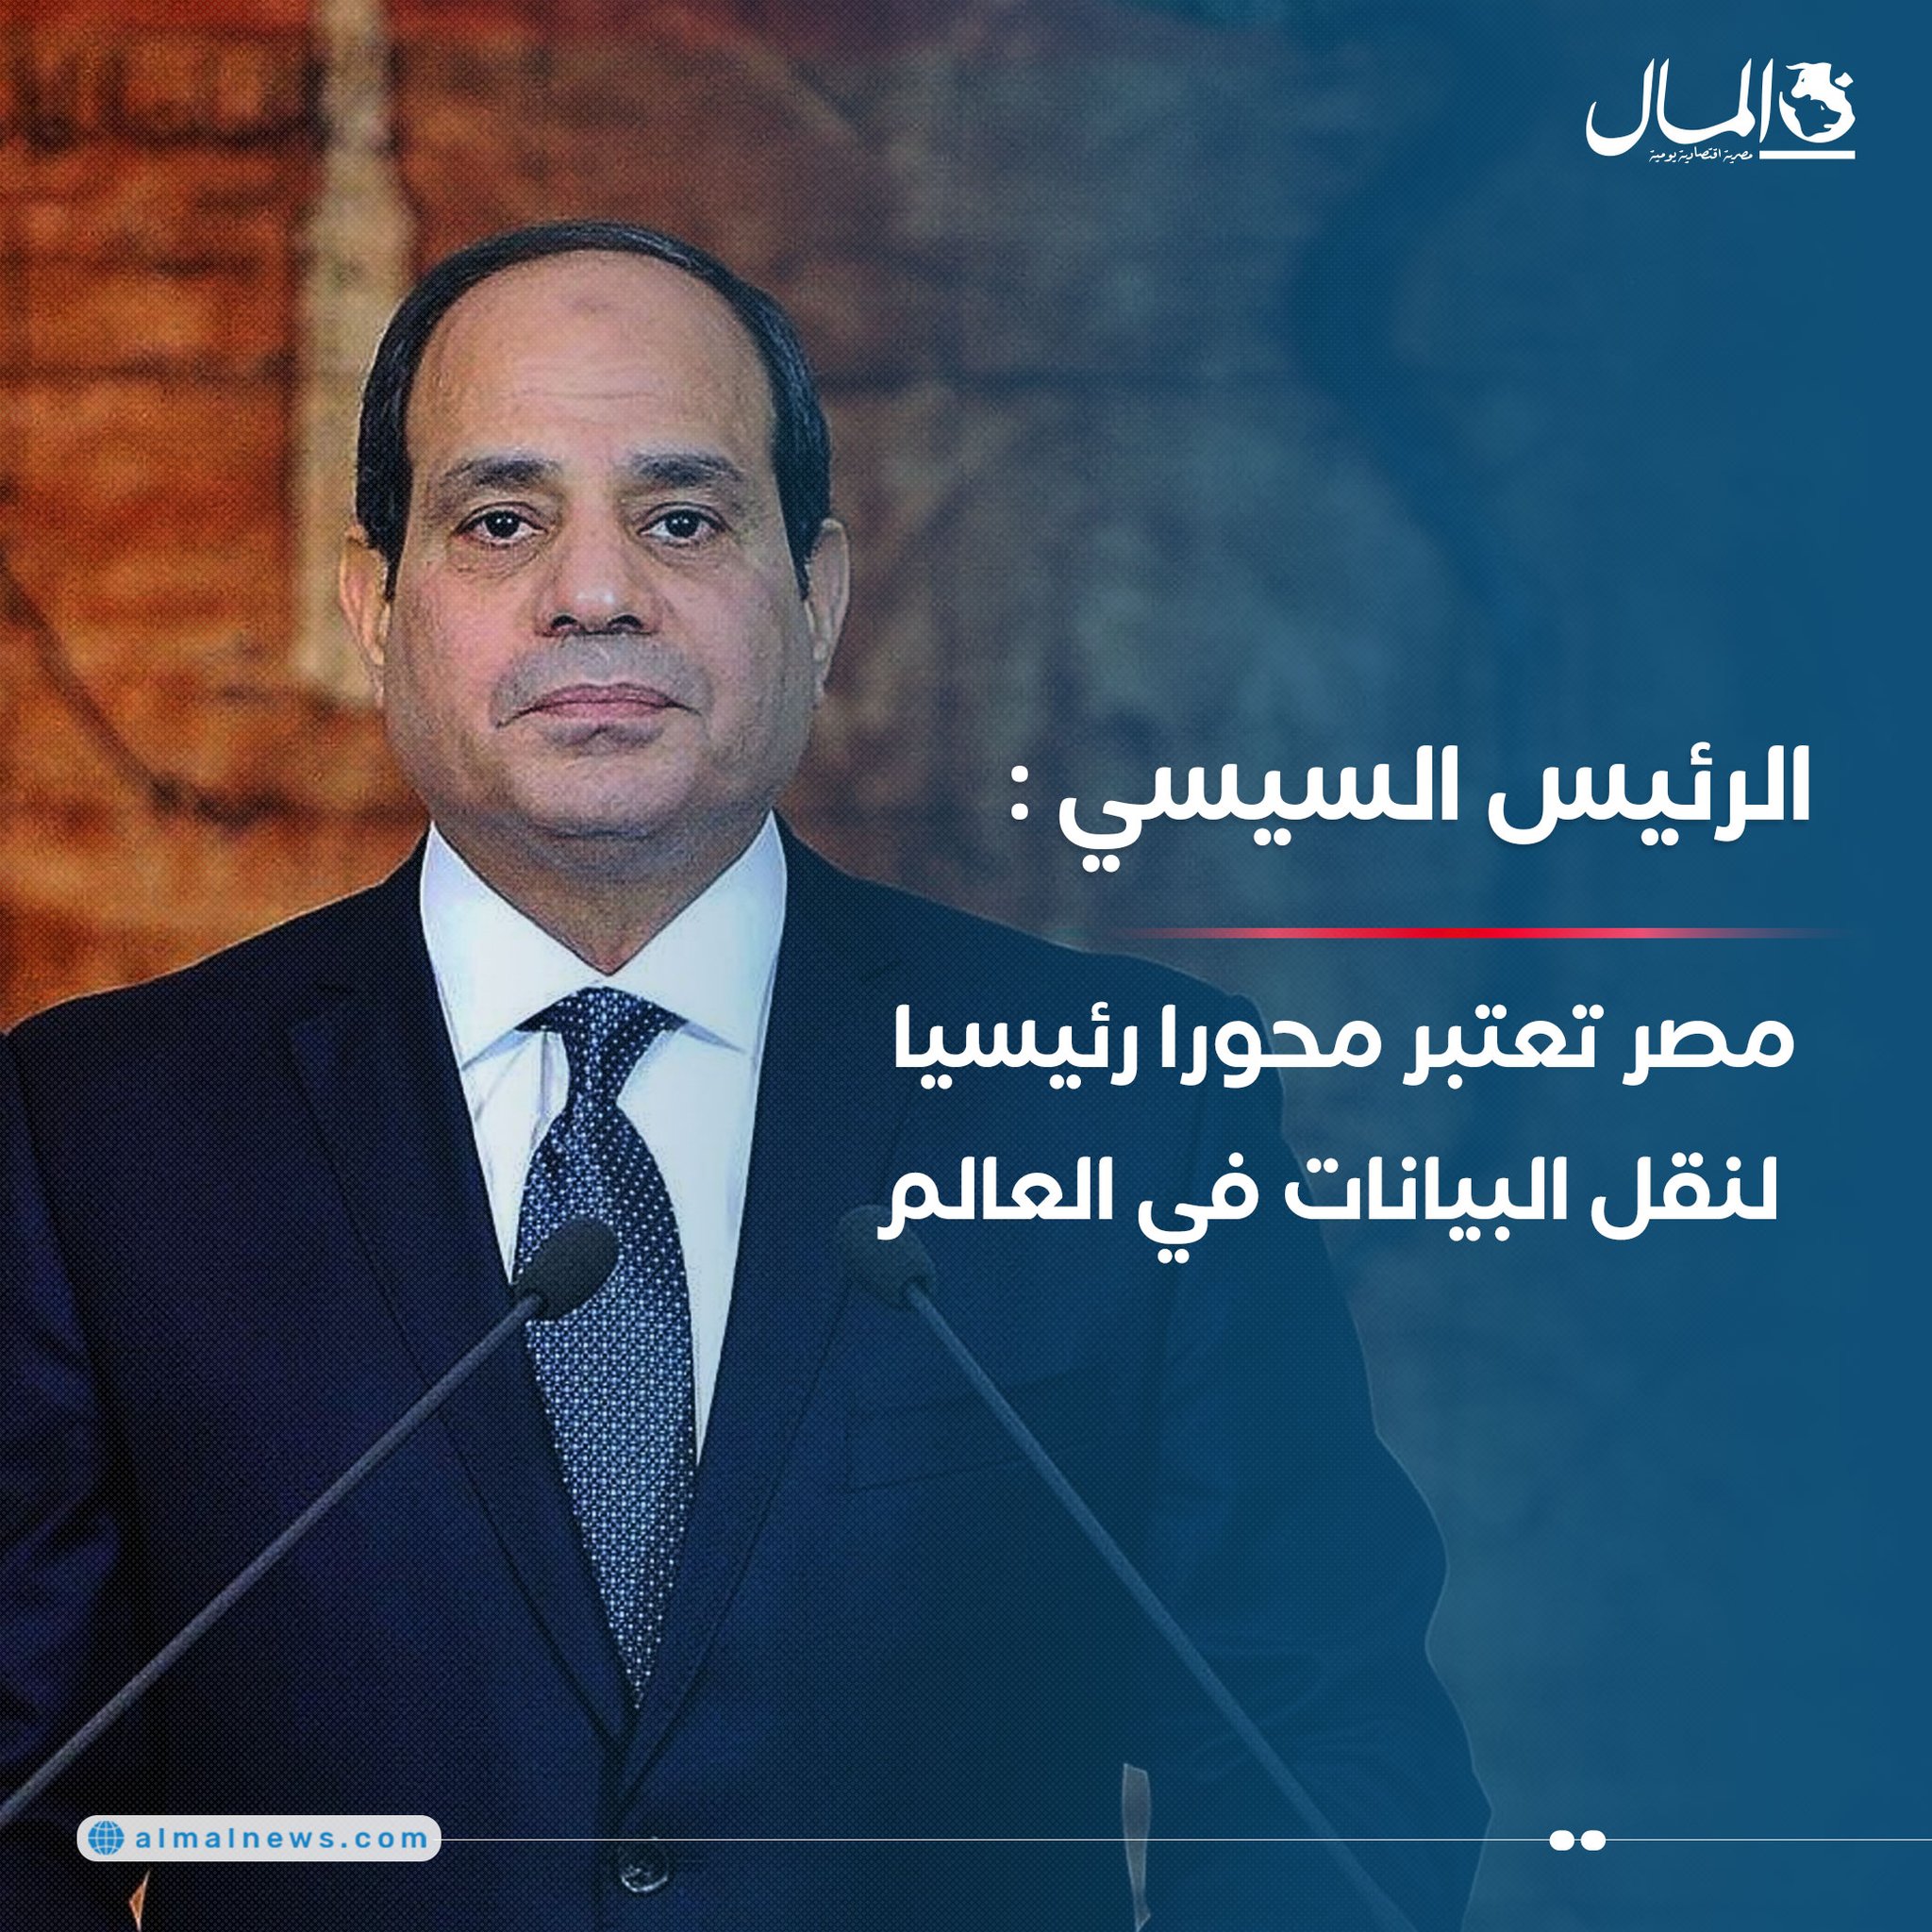 الرئيس السيسي: مصر تعتبر محورا رئيسيا لنقل البيانات في العالم 